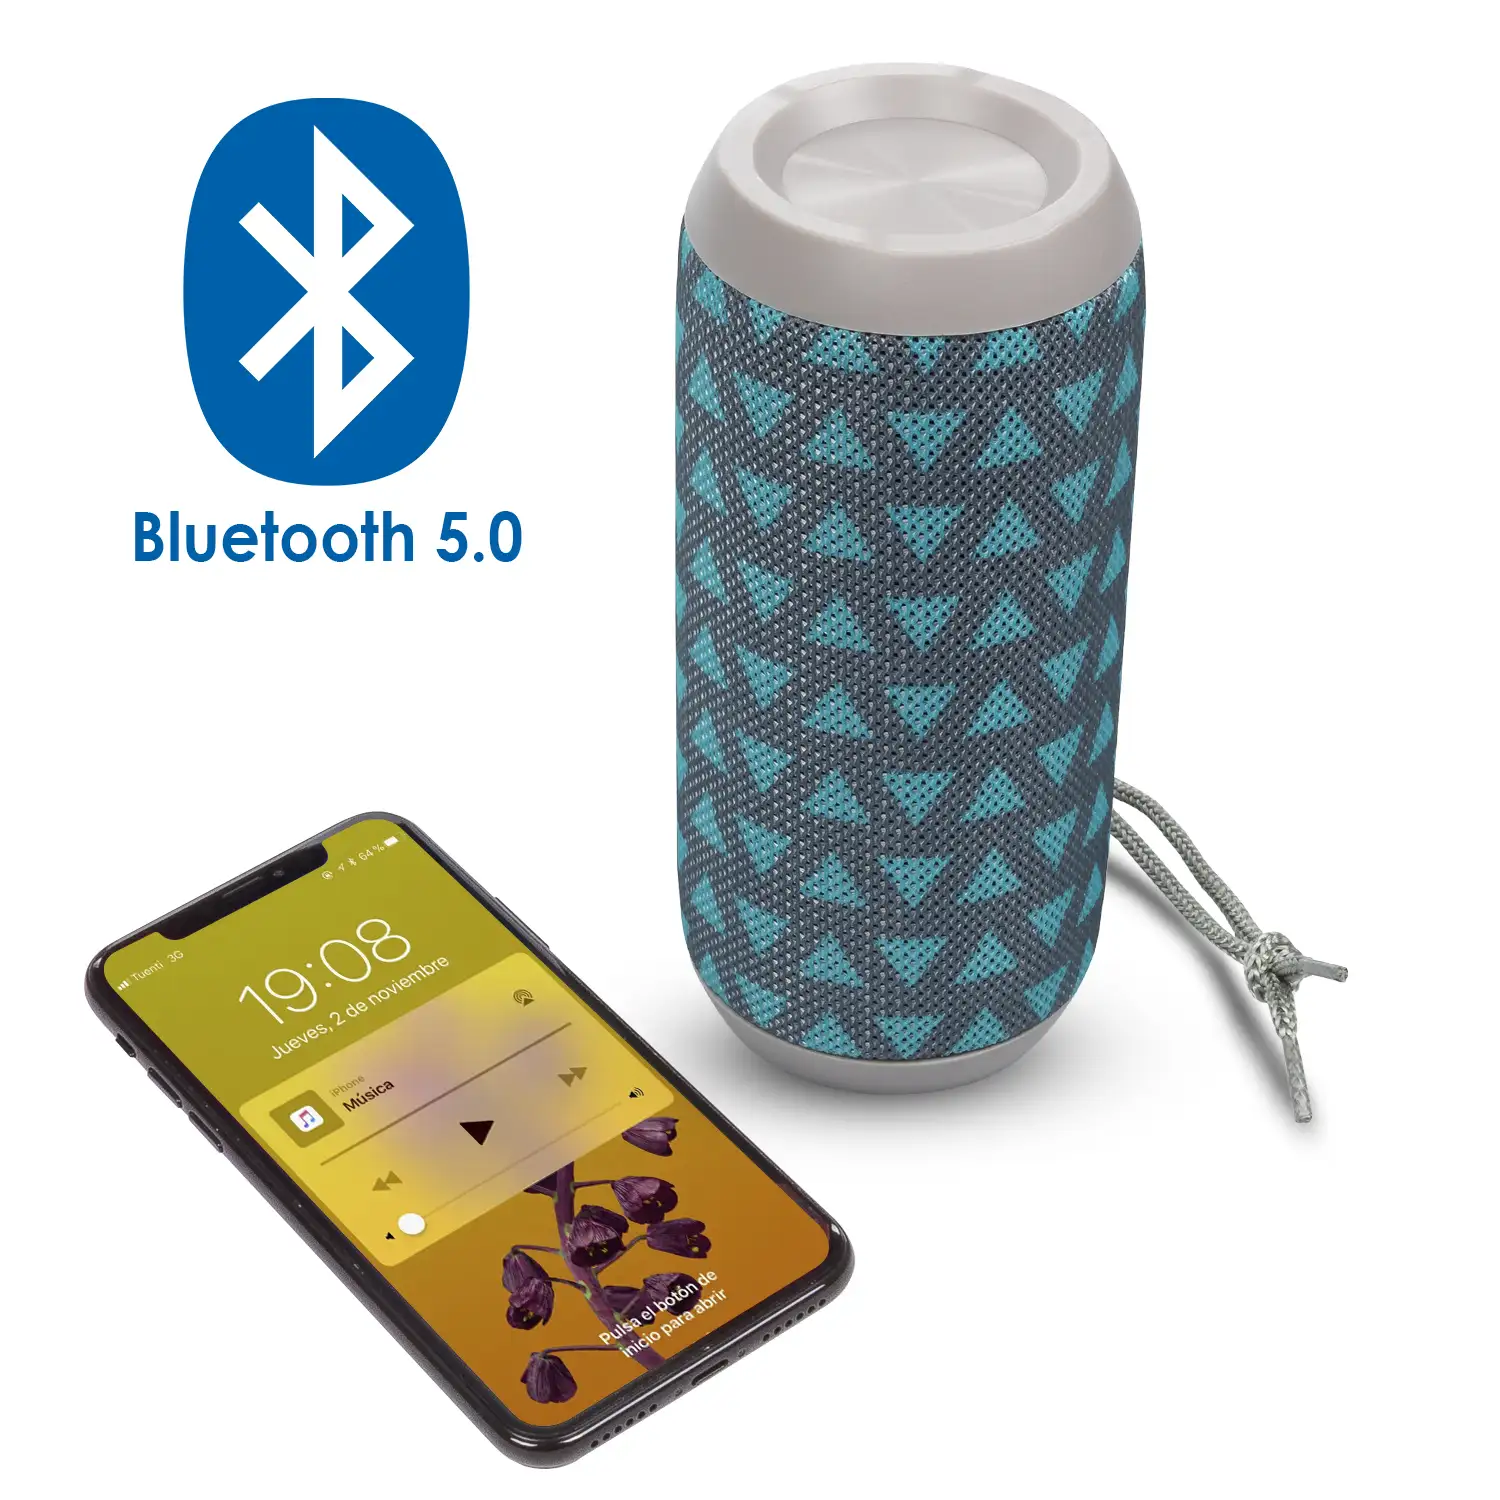 Altavoz A117 Bluetooth portátil. Lector USB, micro SD, radio FM y manos libres. Entrada auxiliar jack 3,5mm.